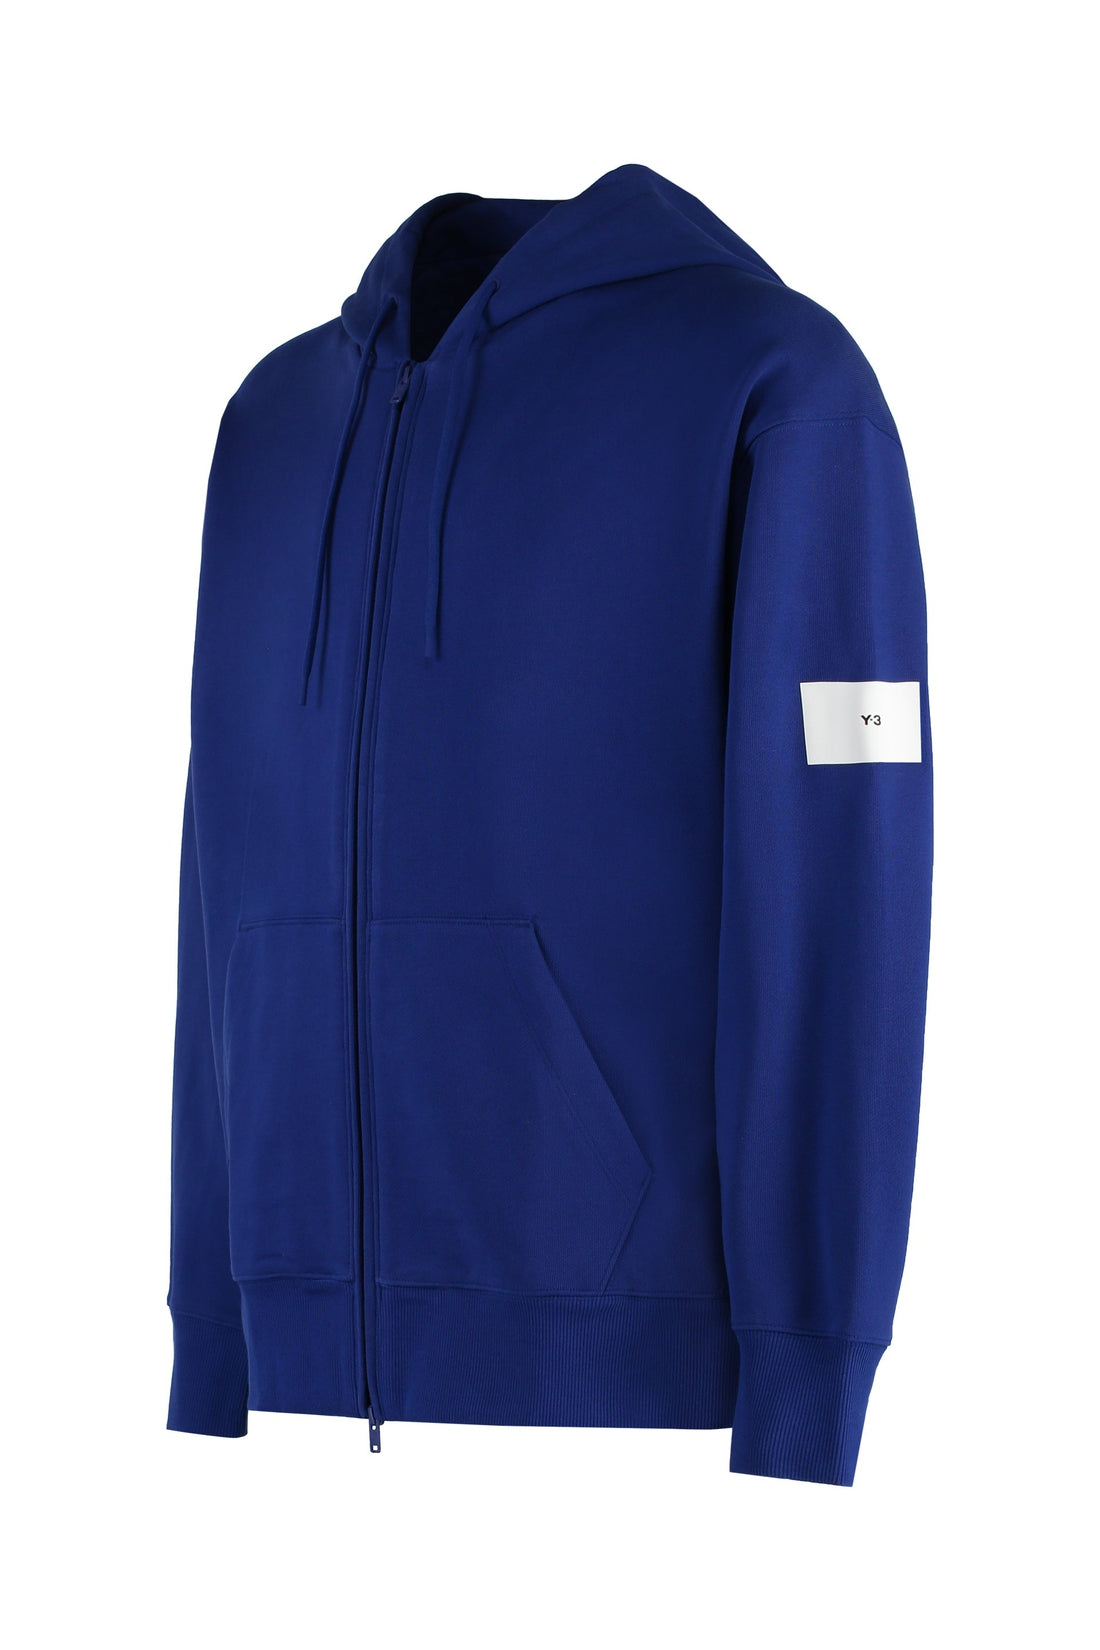 adidas Y-3-OUTLET-SALE-Full zip hoodie-ARCHIVIST